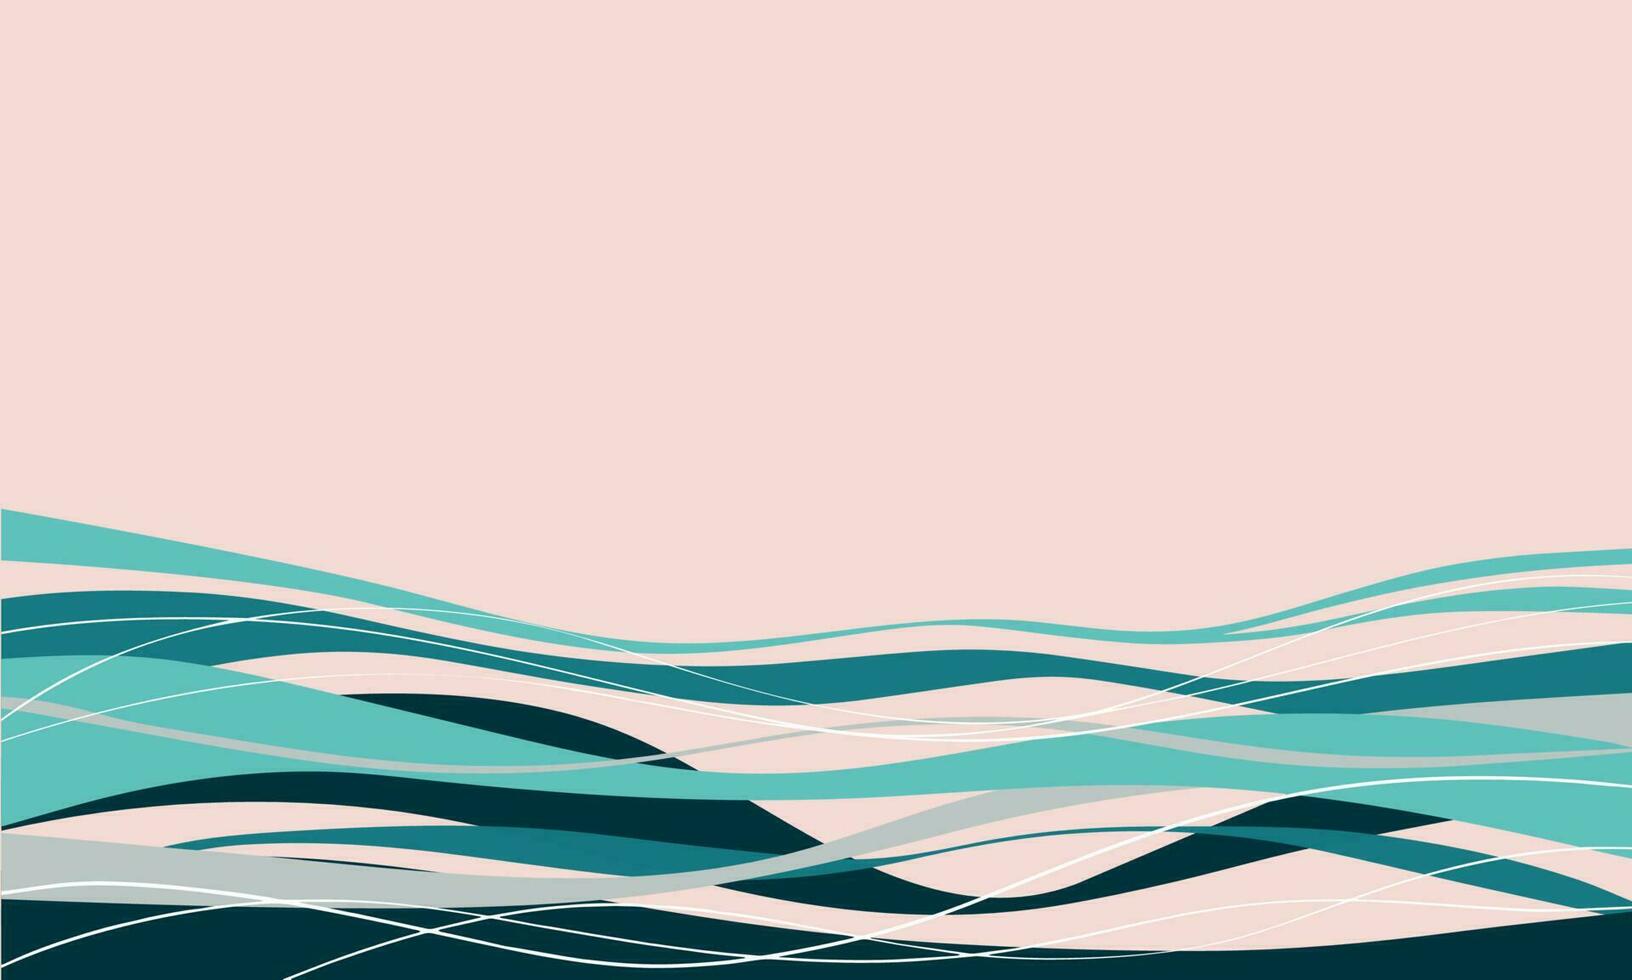 abstrakt Wellen im blaugrün, Türkis, Blau und Sand, grau Wellen auf Rose farbig Hintergrund, Vektor Illustration